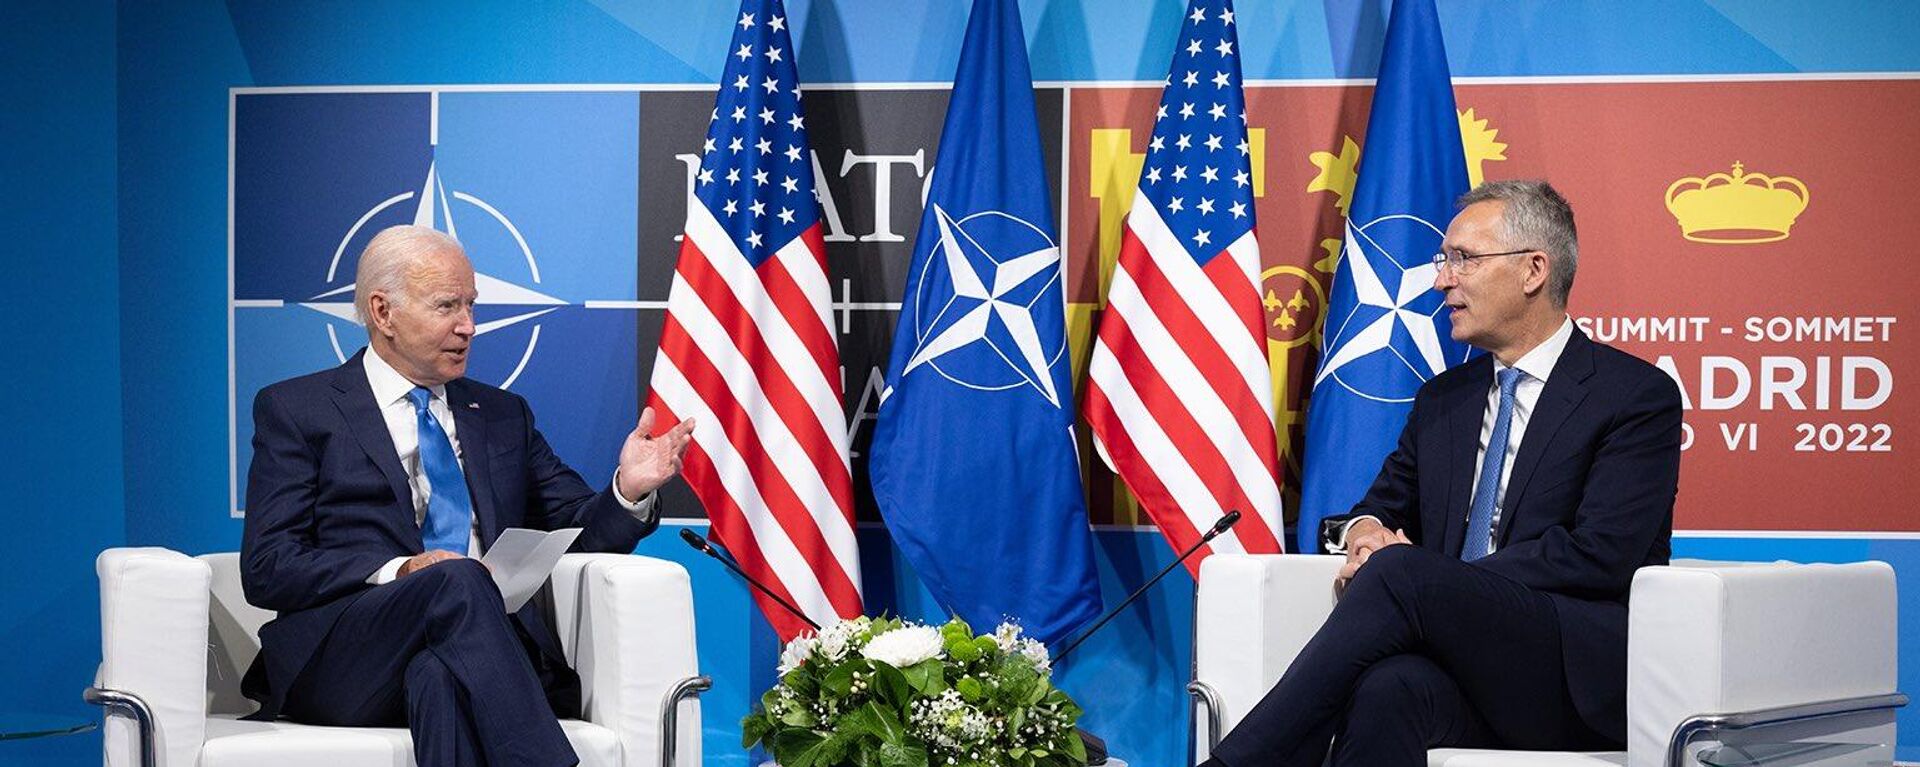 El presidente estadounidense, Joe Biden, y el secretario general de la OTAN, Jens Stoltenberg, en Madrid - Sputnik Mundo, 1920, 17.09.2022